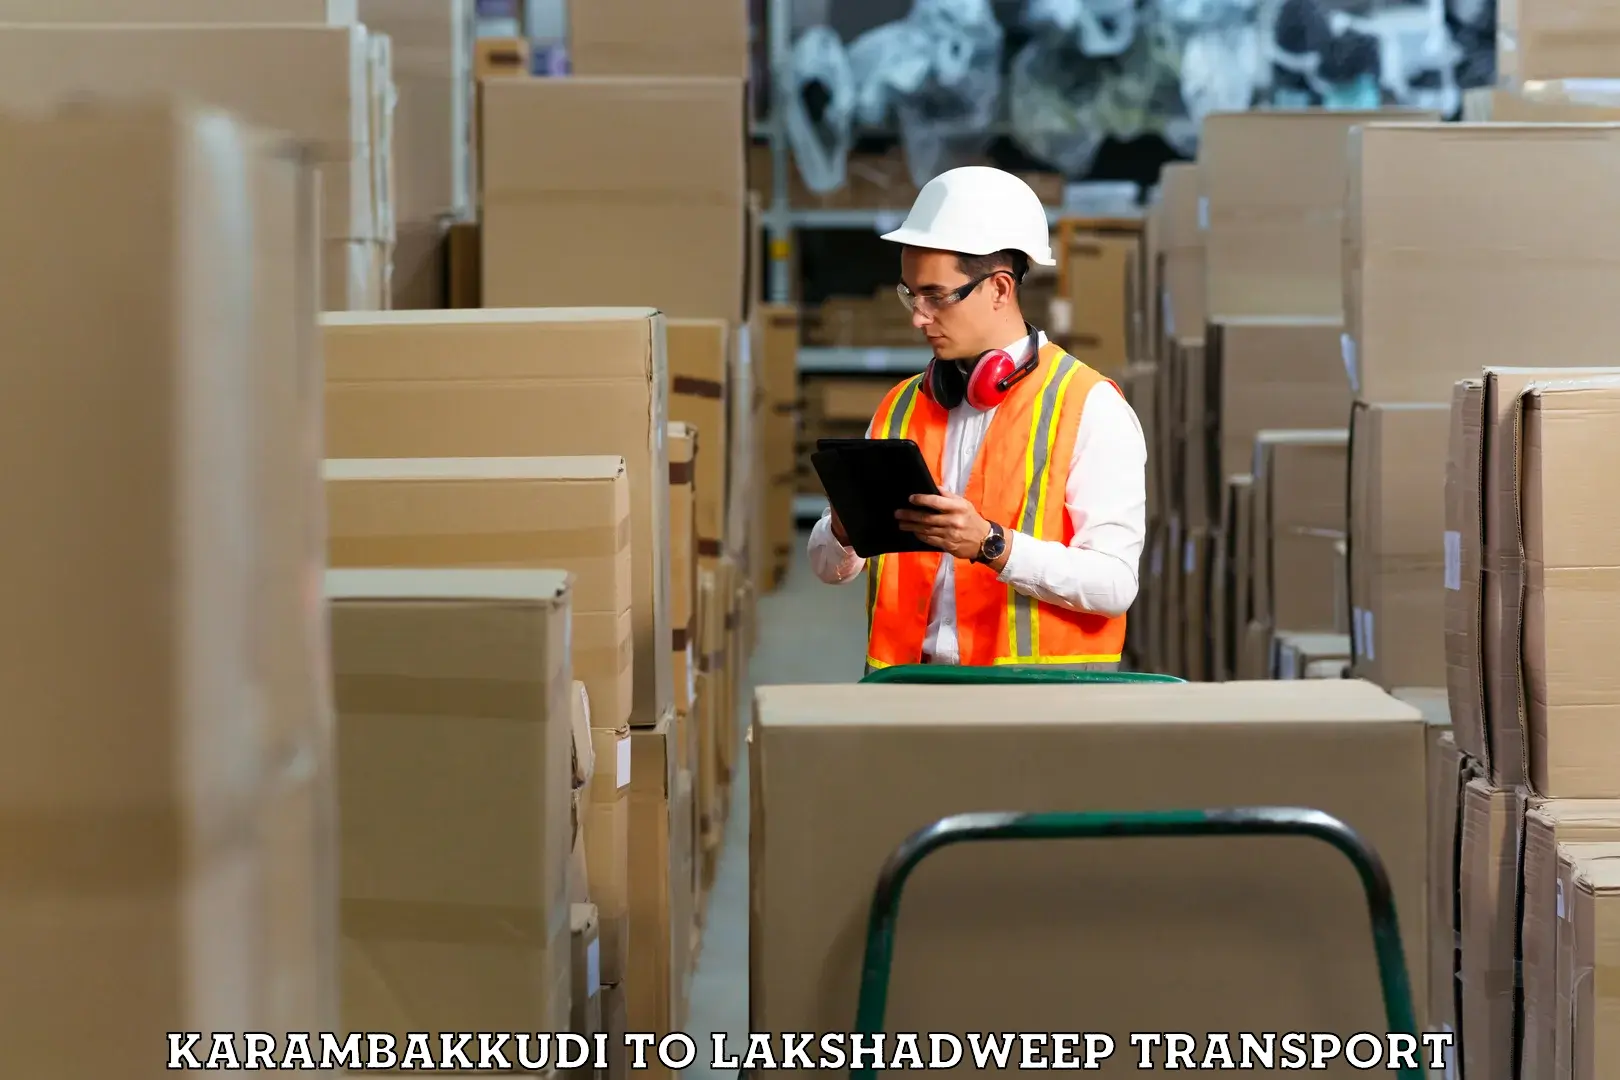 Delivery service Karambakkudi to Lakshadweep